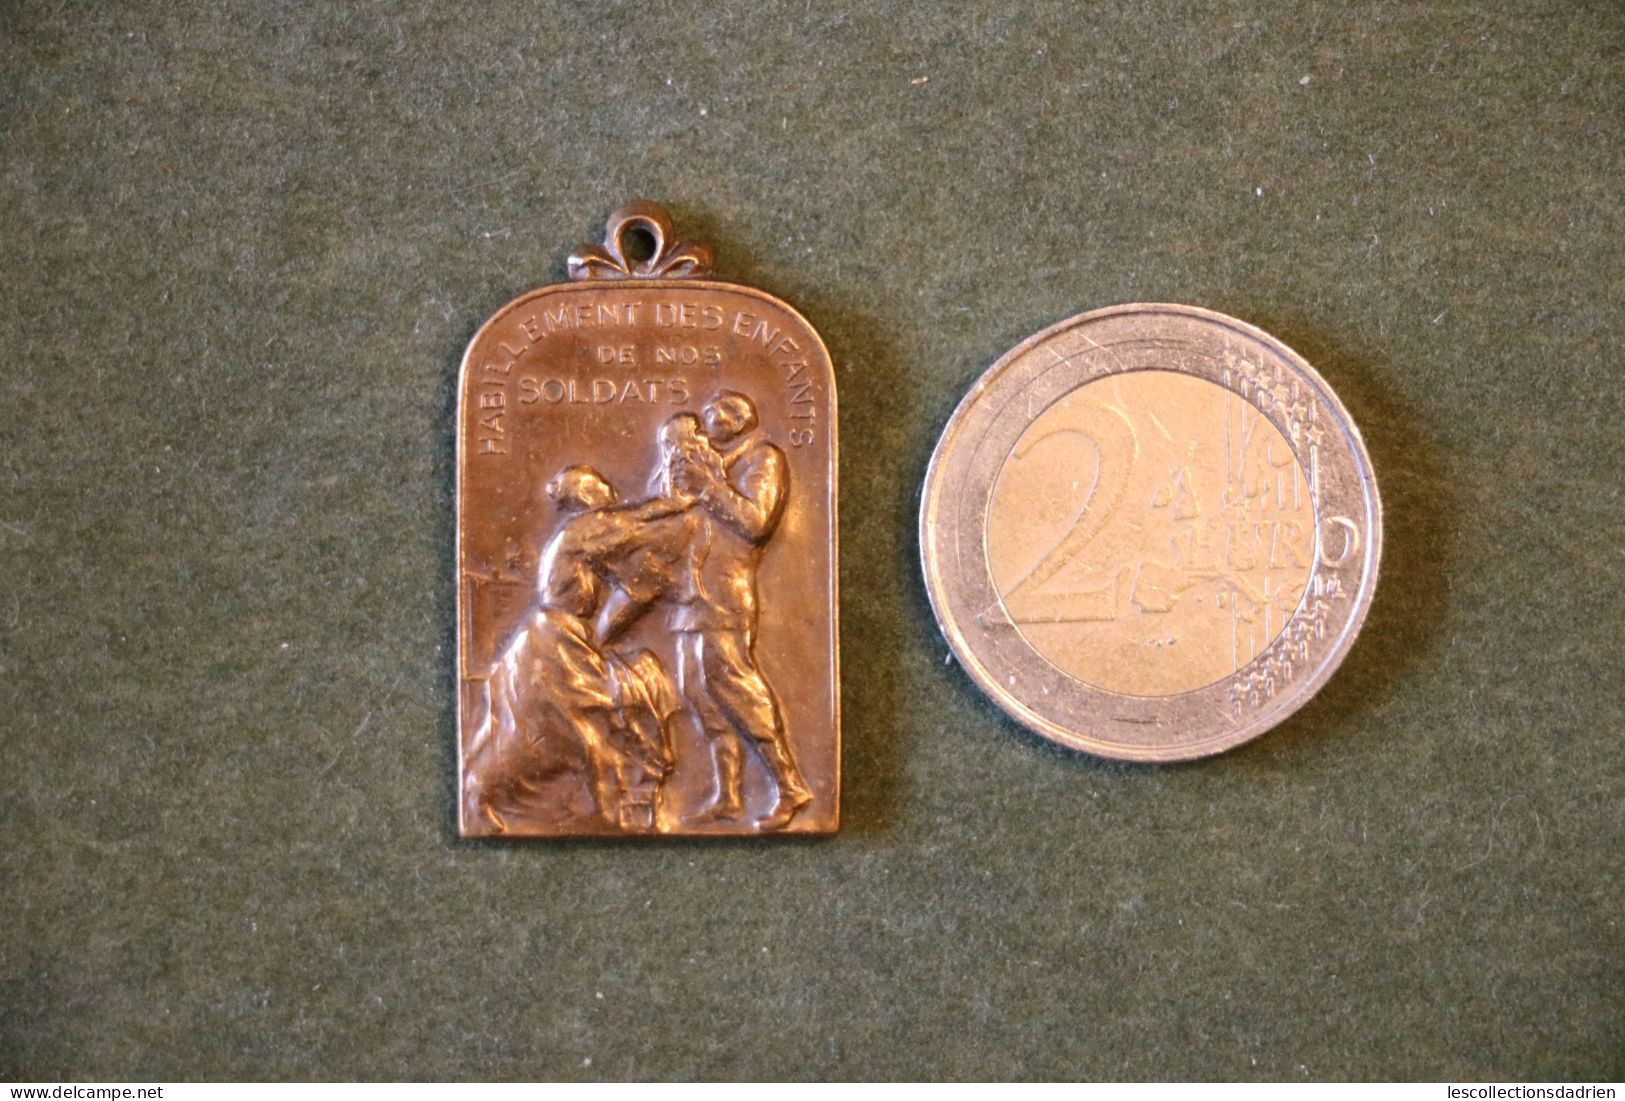 Médaille Habillement Des Enfants De Nos Soldats Guerre14-18 Bronze Belgian Medal Wwi - Médaillette - Journée - Charlier - België